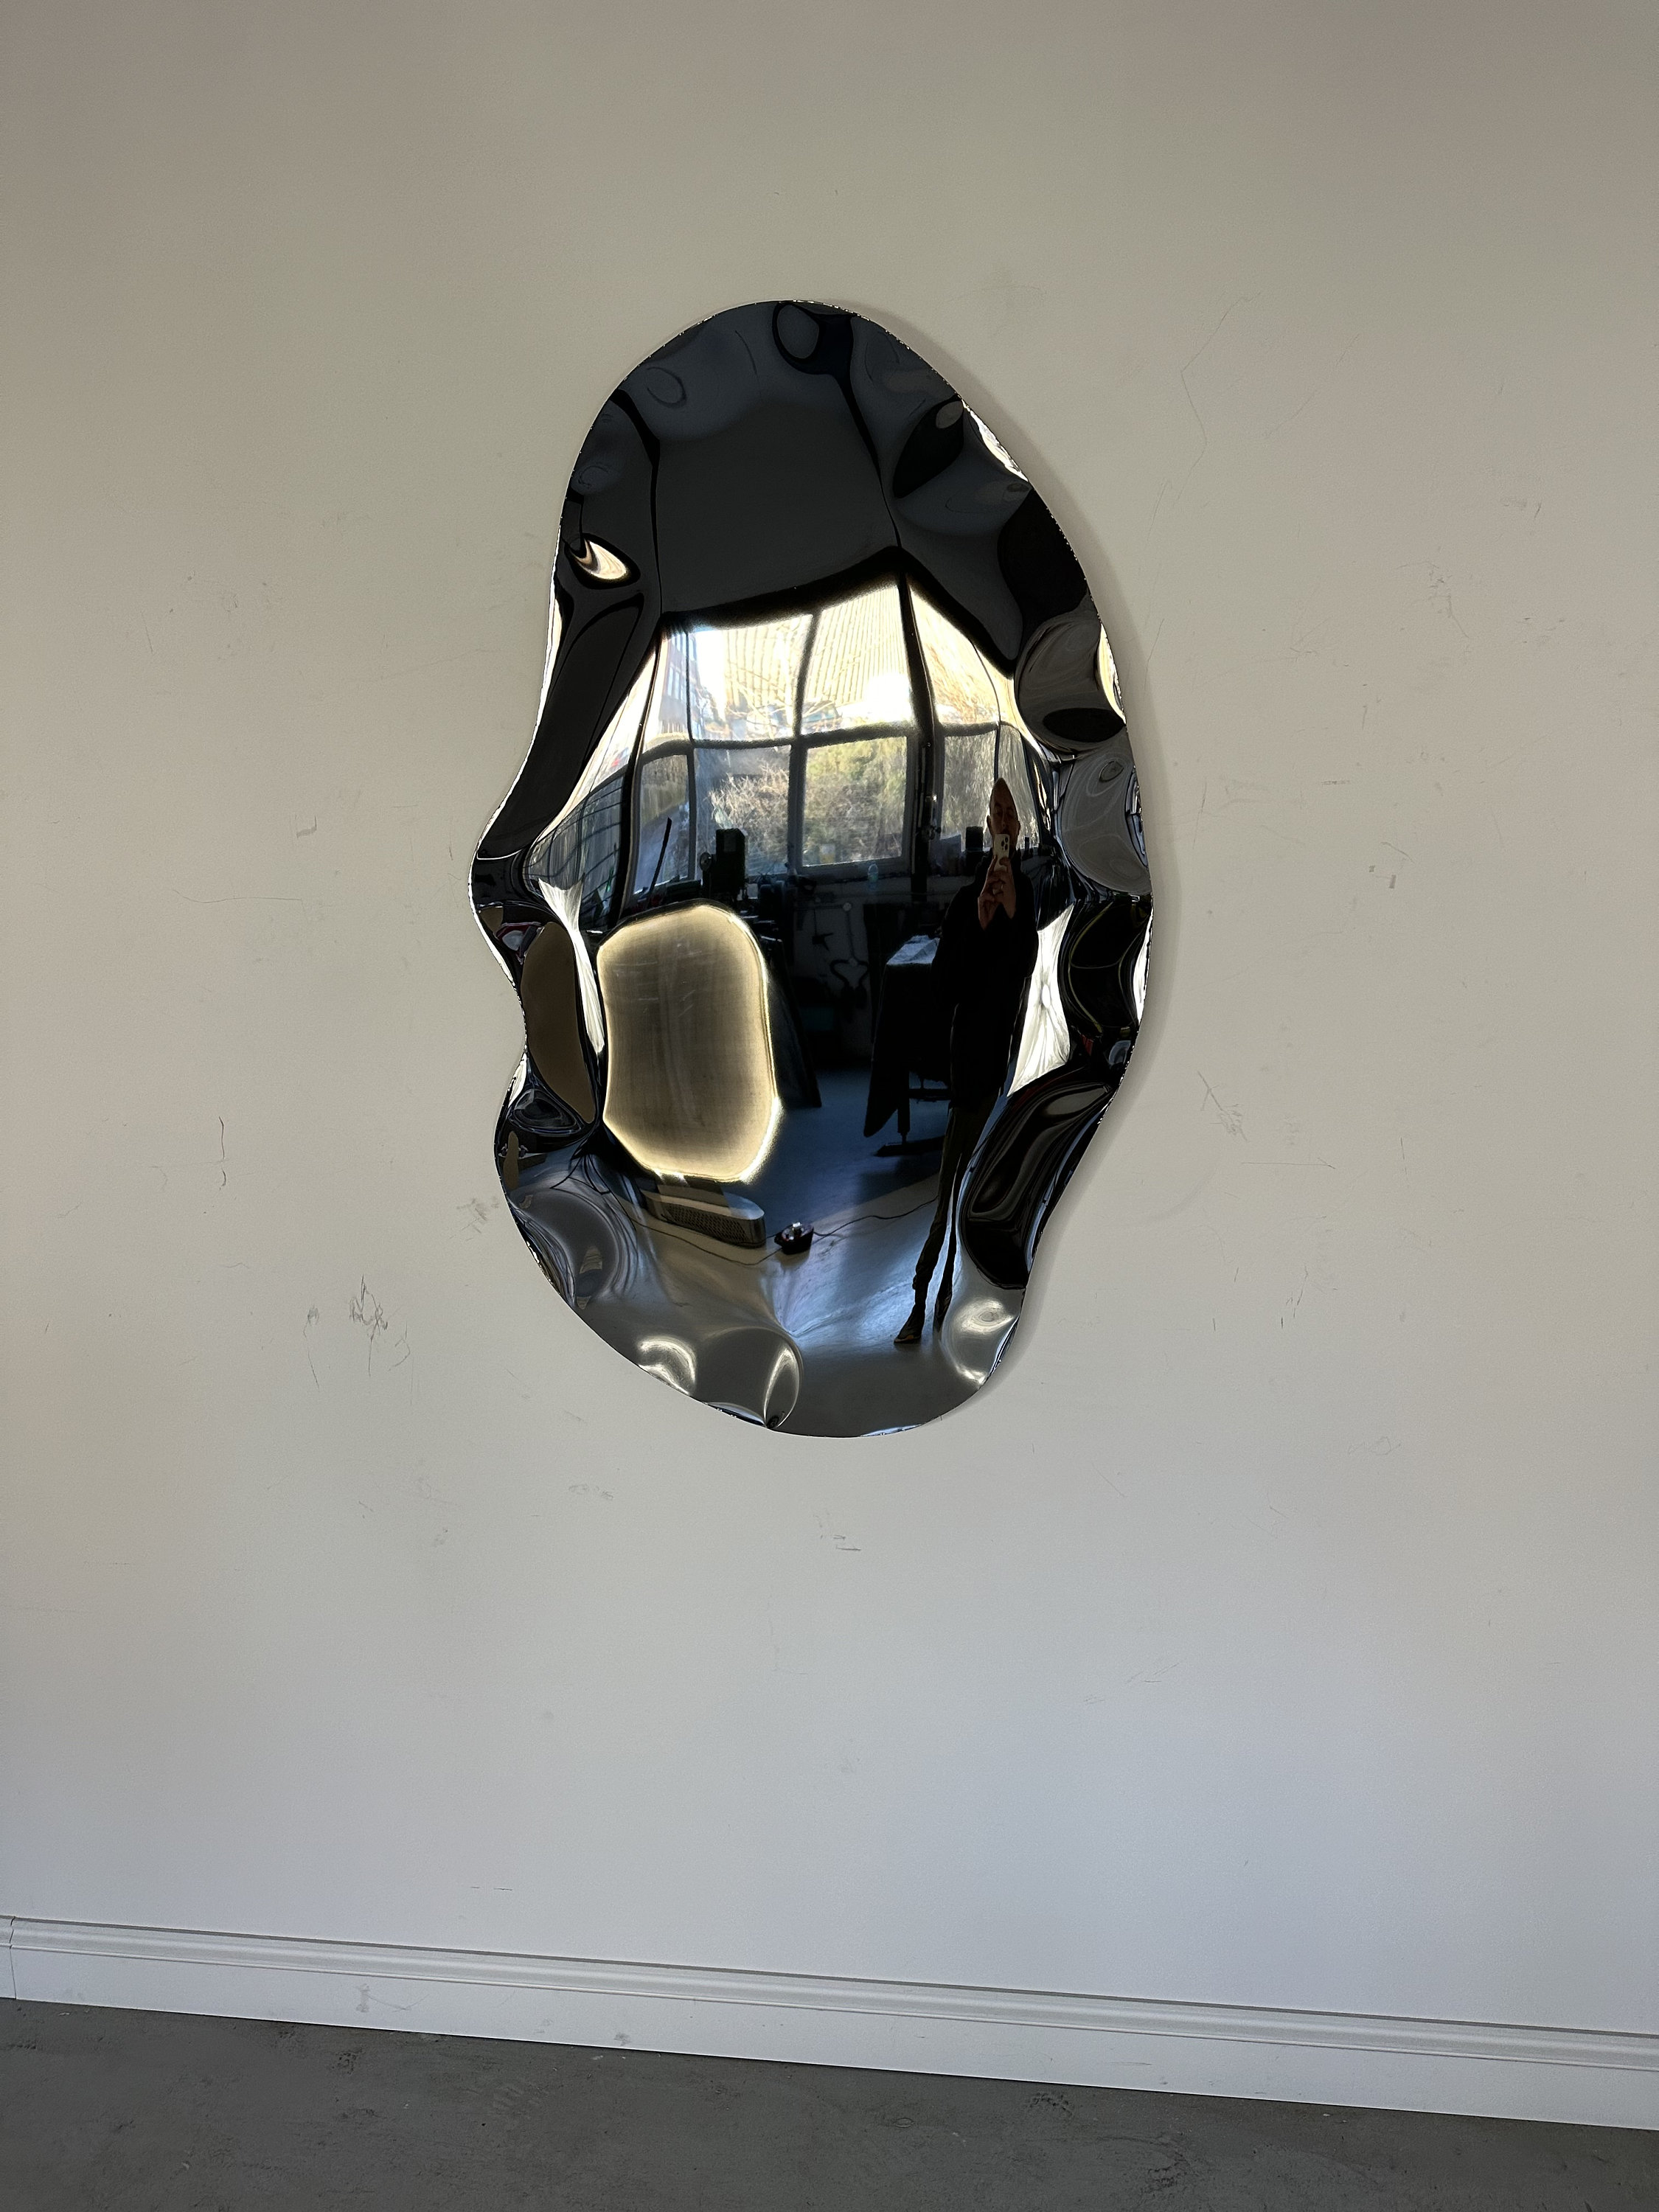 Pfützenspiegel, Skulptur, konvexer Spiegel Corvex-Spiegel, Chromspiegel,  Kunstwerk, Wandskulptur, Metallskulptur, Metallspiegel, rund -   Österreich